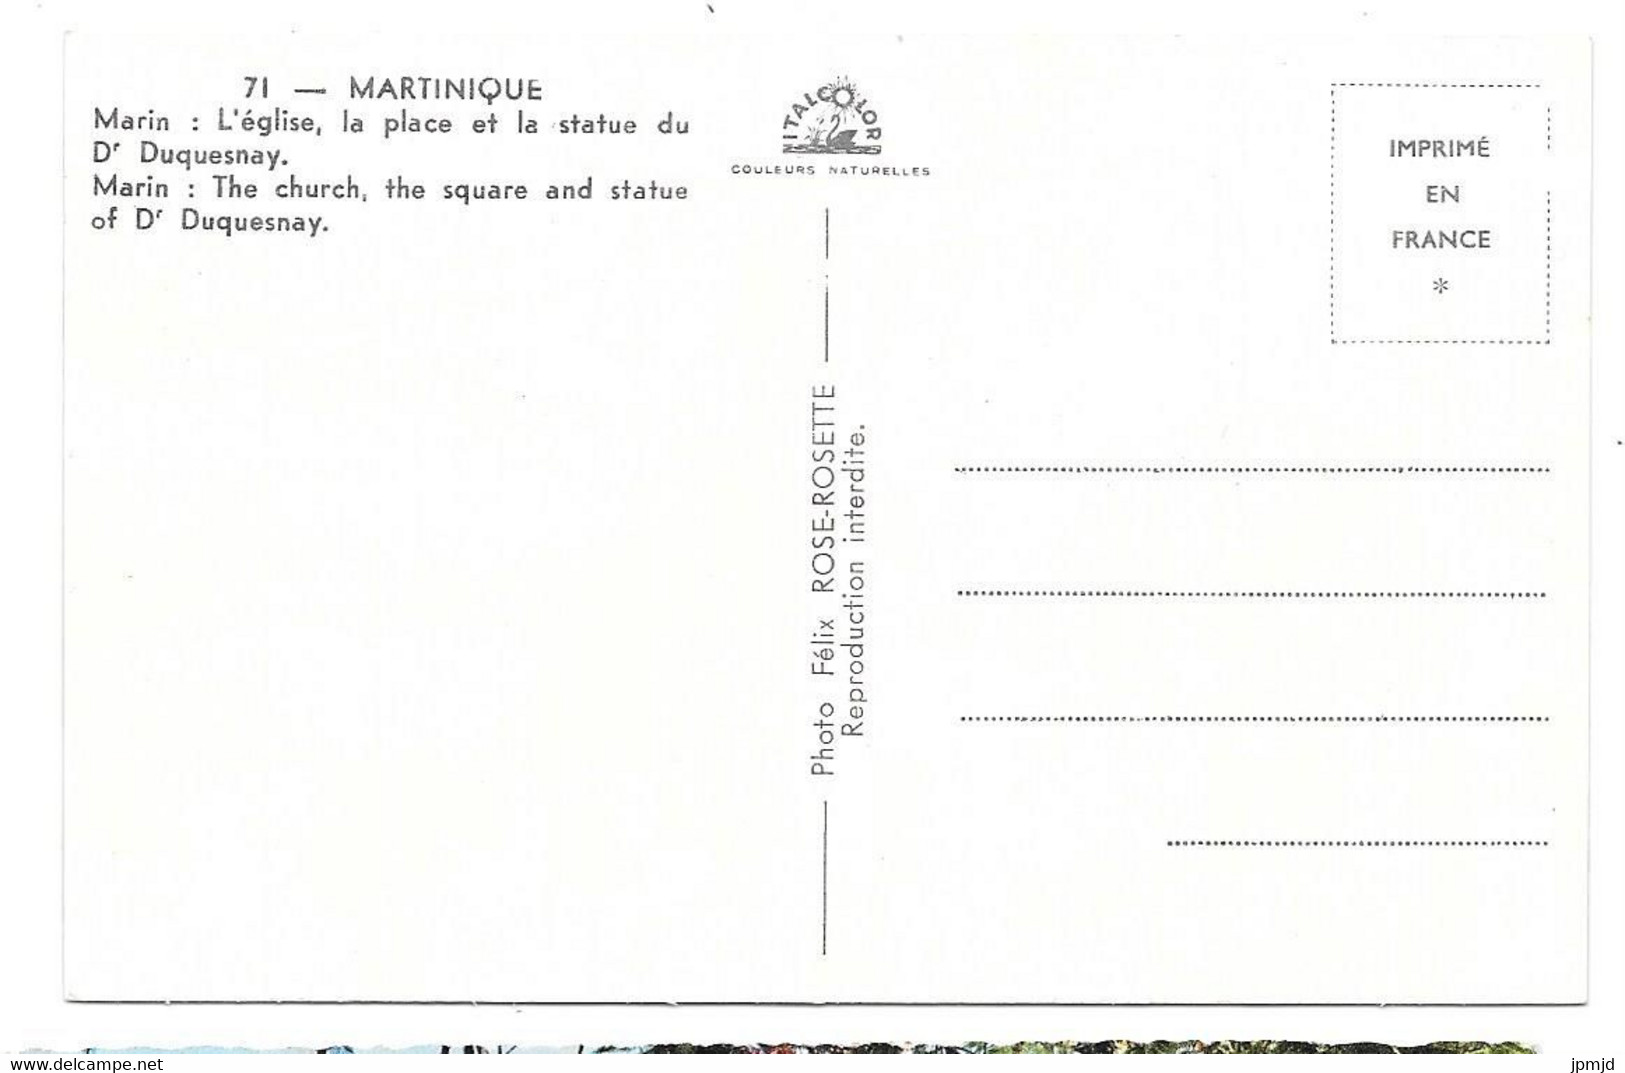 97 - MARTINIQUE - Marin - L'église, La Place Et La Statue Du Dr Duquesnay - Photo Félix ROSE-ROSETTE N° 71 - Le Marin